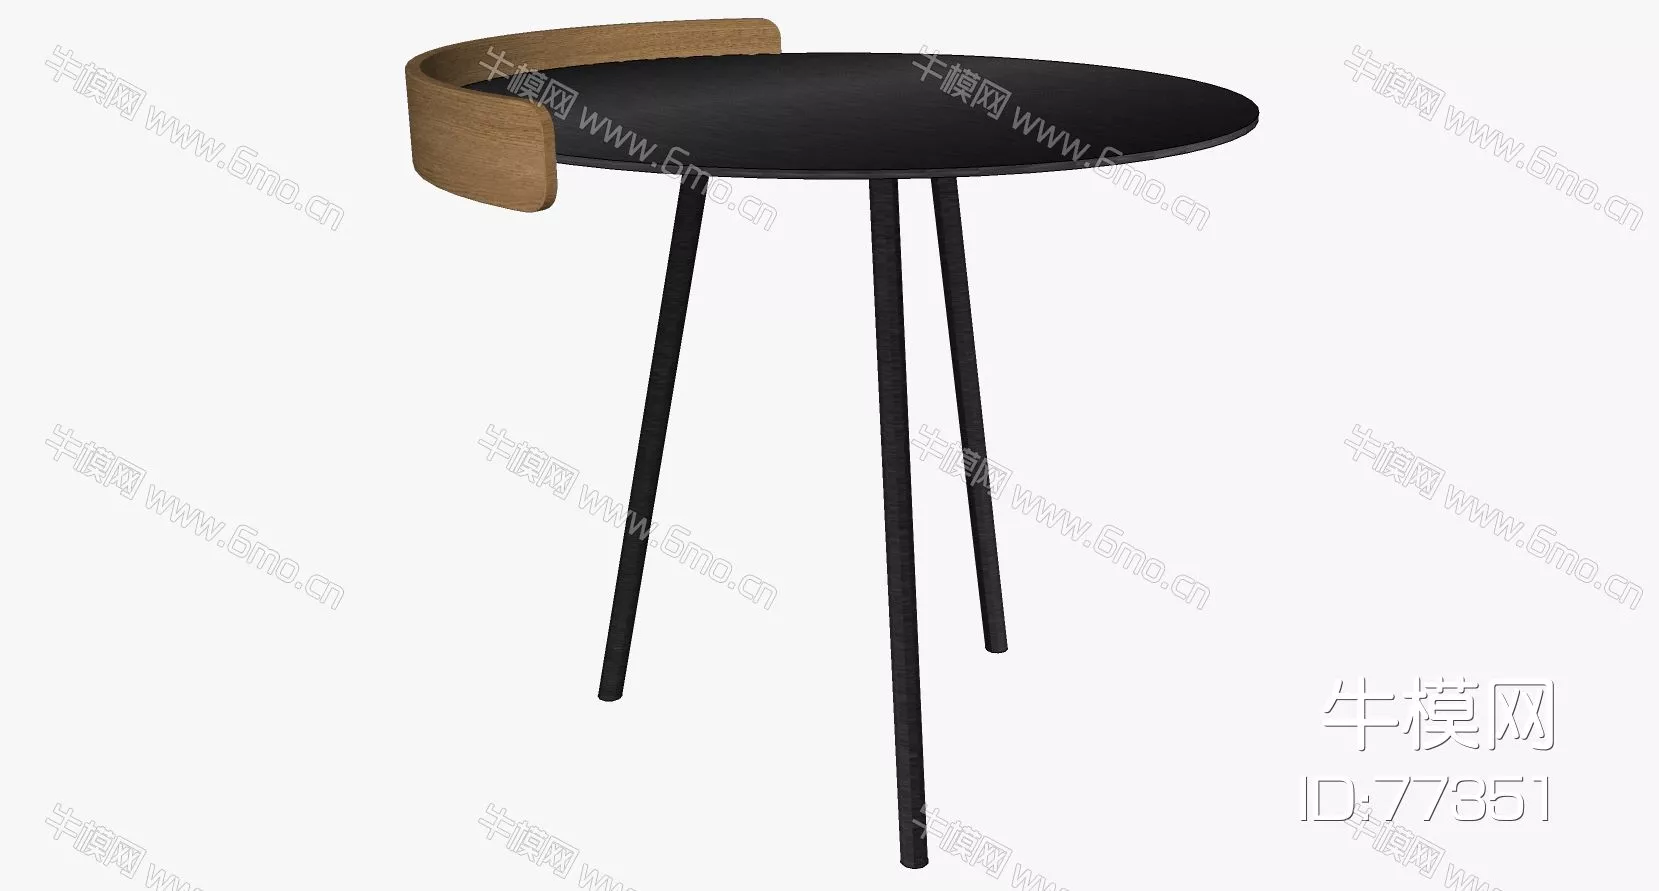 NORDIC SIDE TABLE - SKETCHUP 3D MODEL - ENSCAPE - 77351